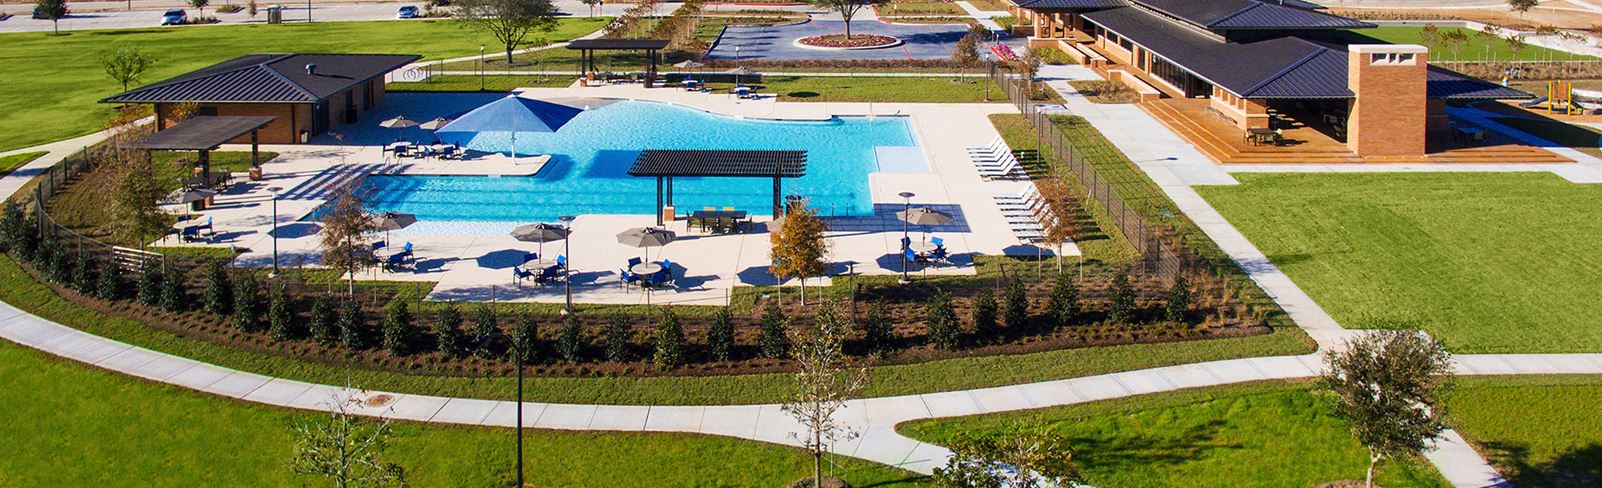 Birdseye view of Elyson pool in Elyson Katy, TX